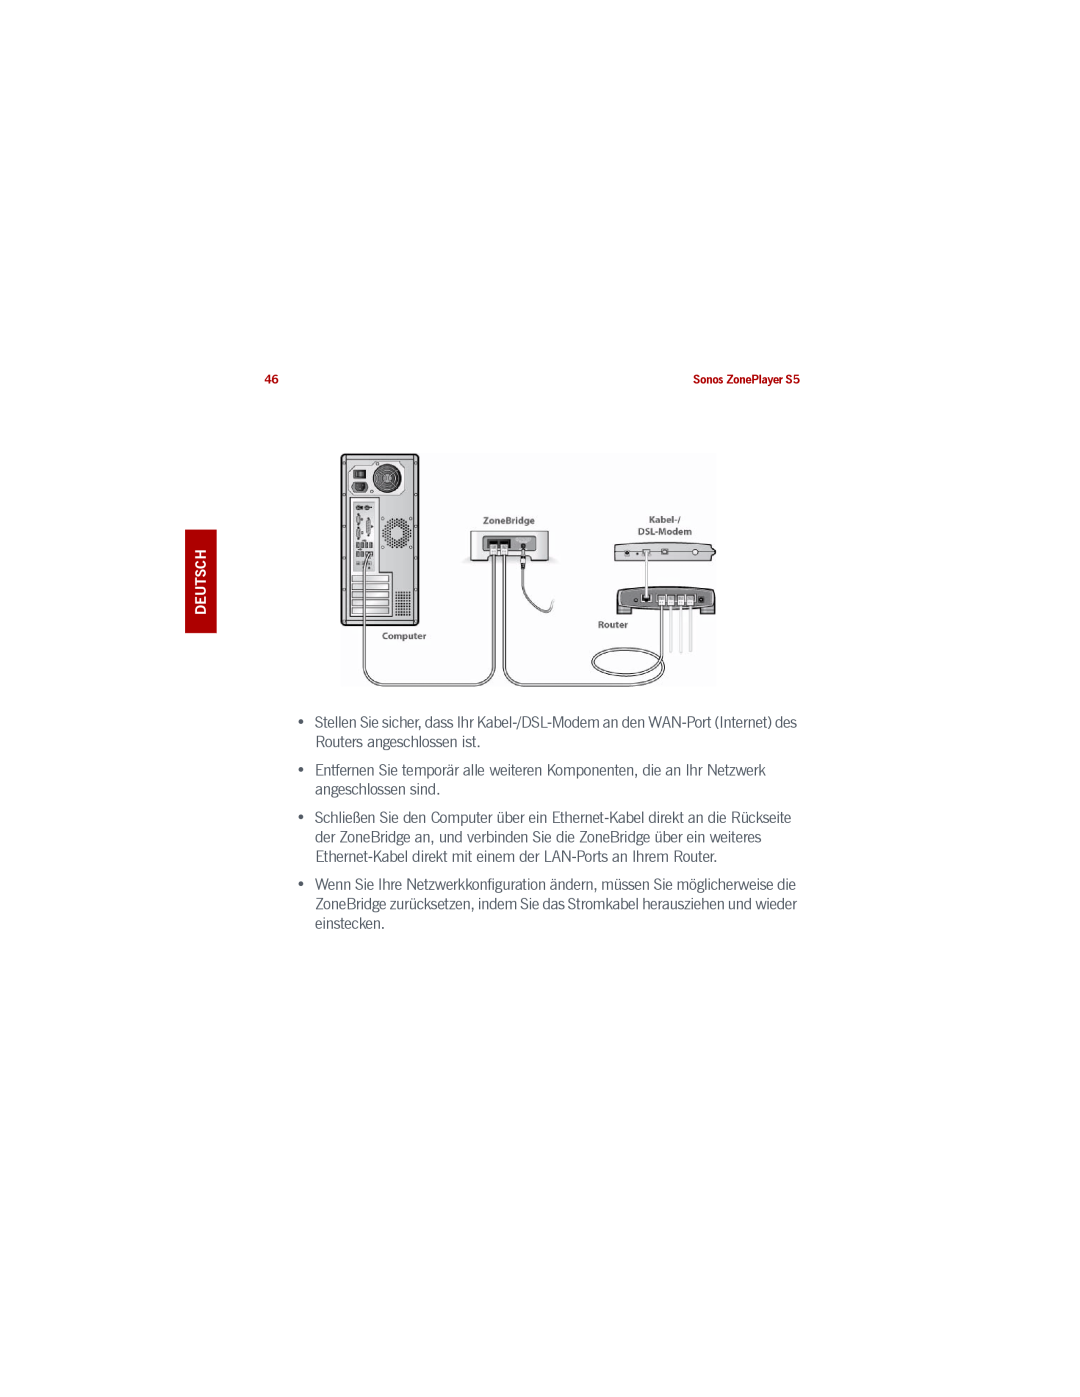 Sonos S5 manual Stellen Sie sicher, dass Ihr Kabel-/DSL-Modeman den WAN-PortInternet des Routers angeschlossen ist 